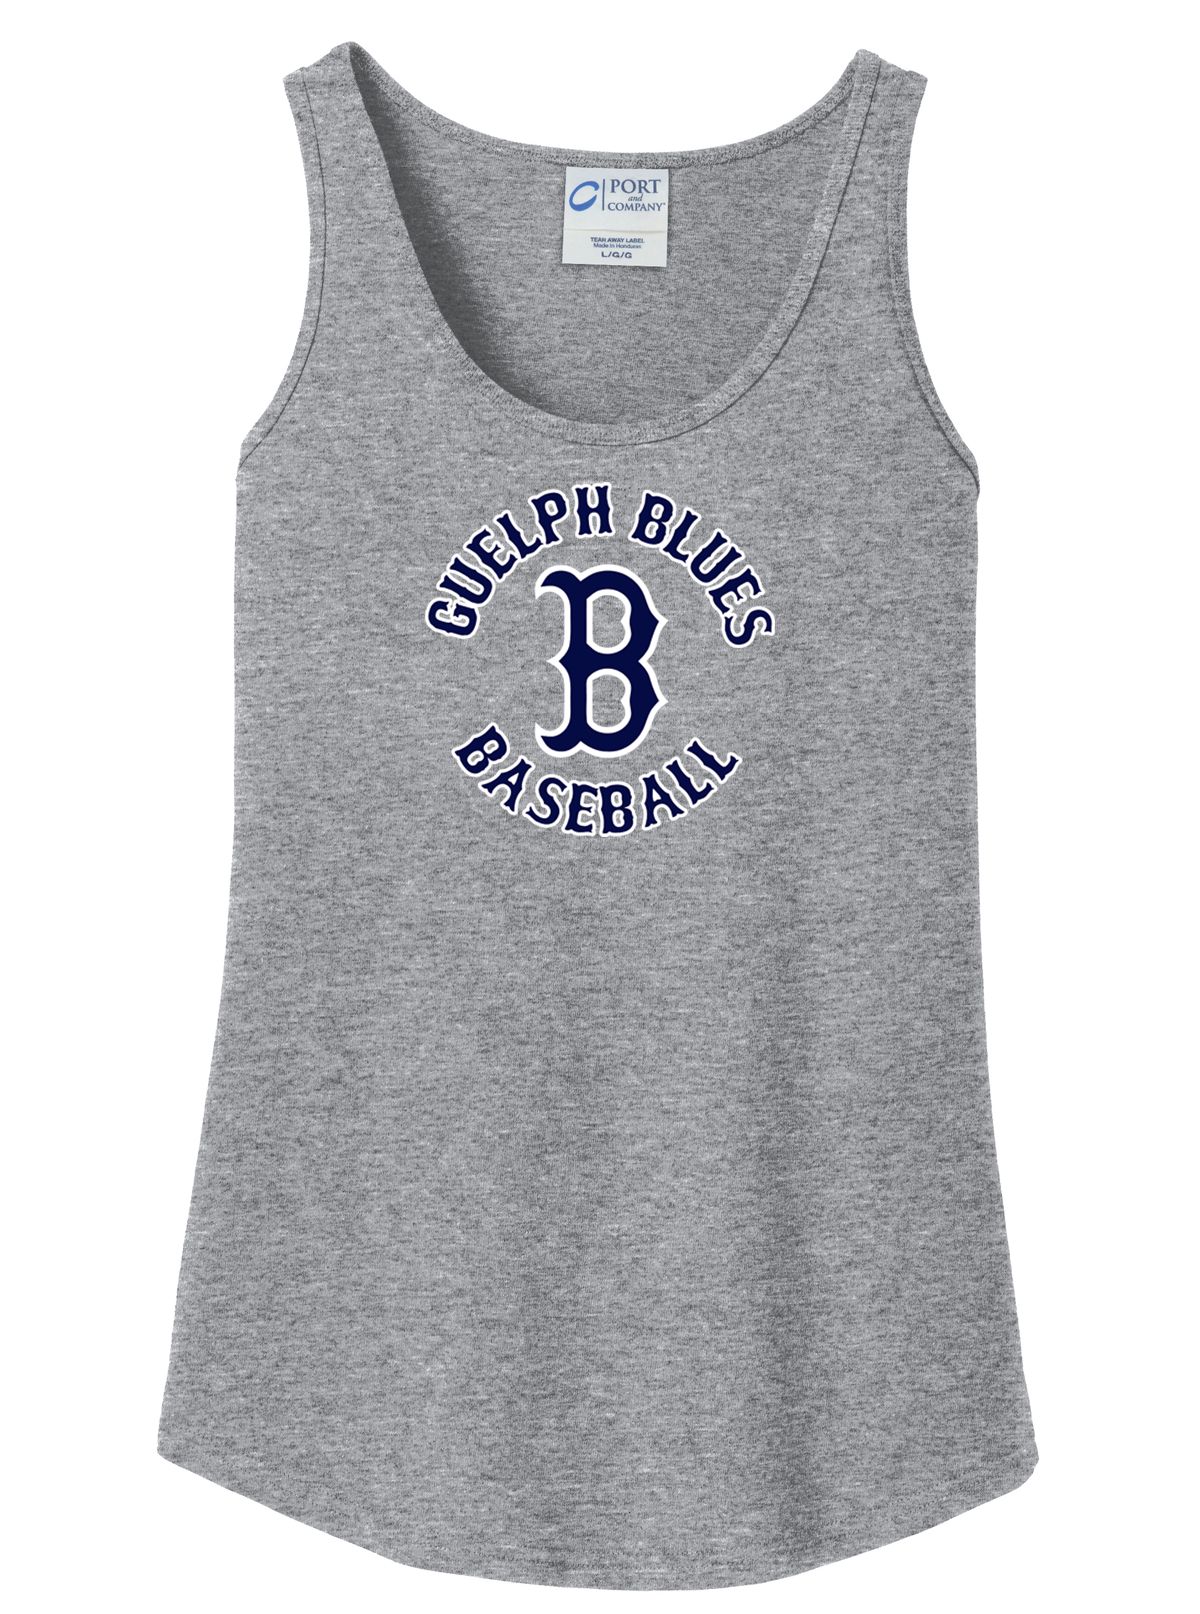 Guelph Blues Baseball Women's Tank Top